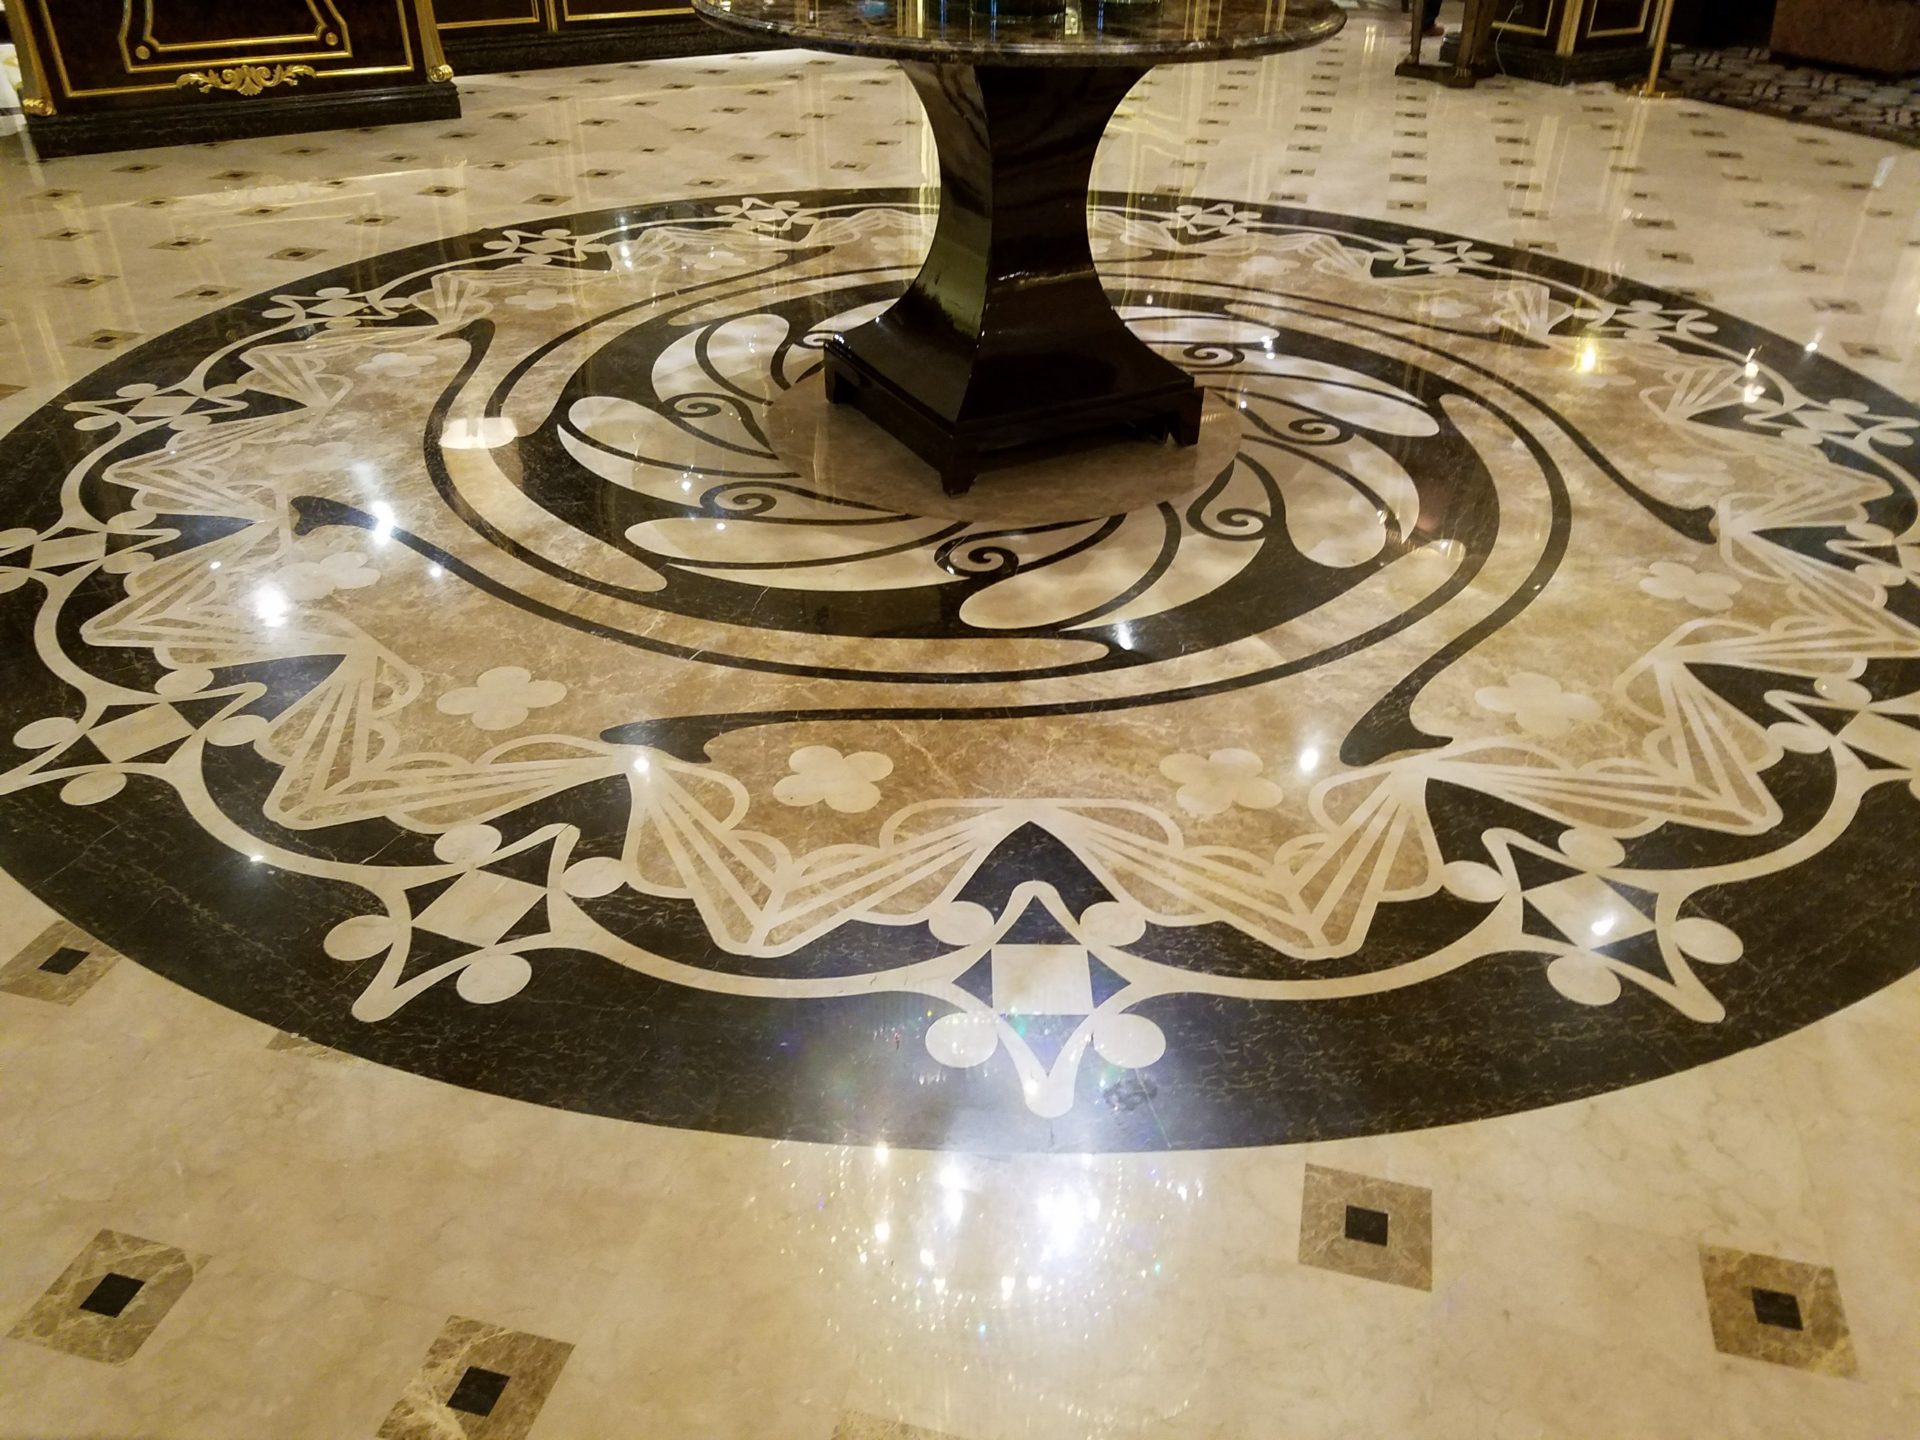 a circular table with a circular design on the floor